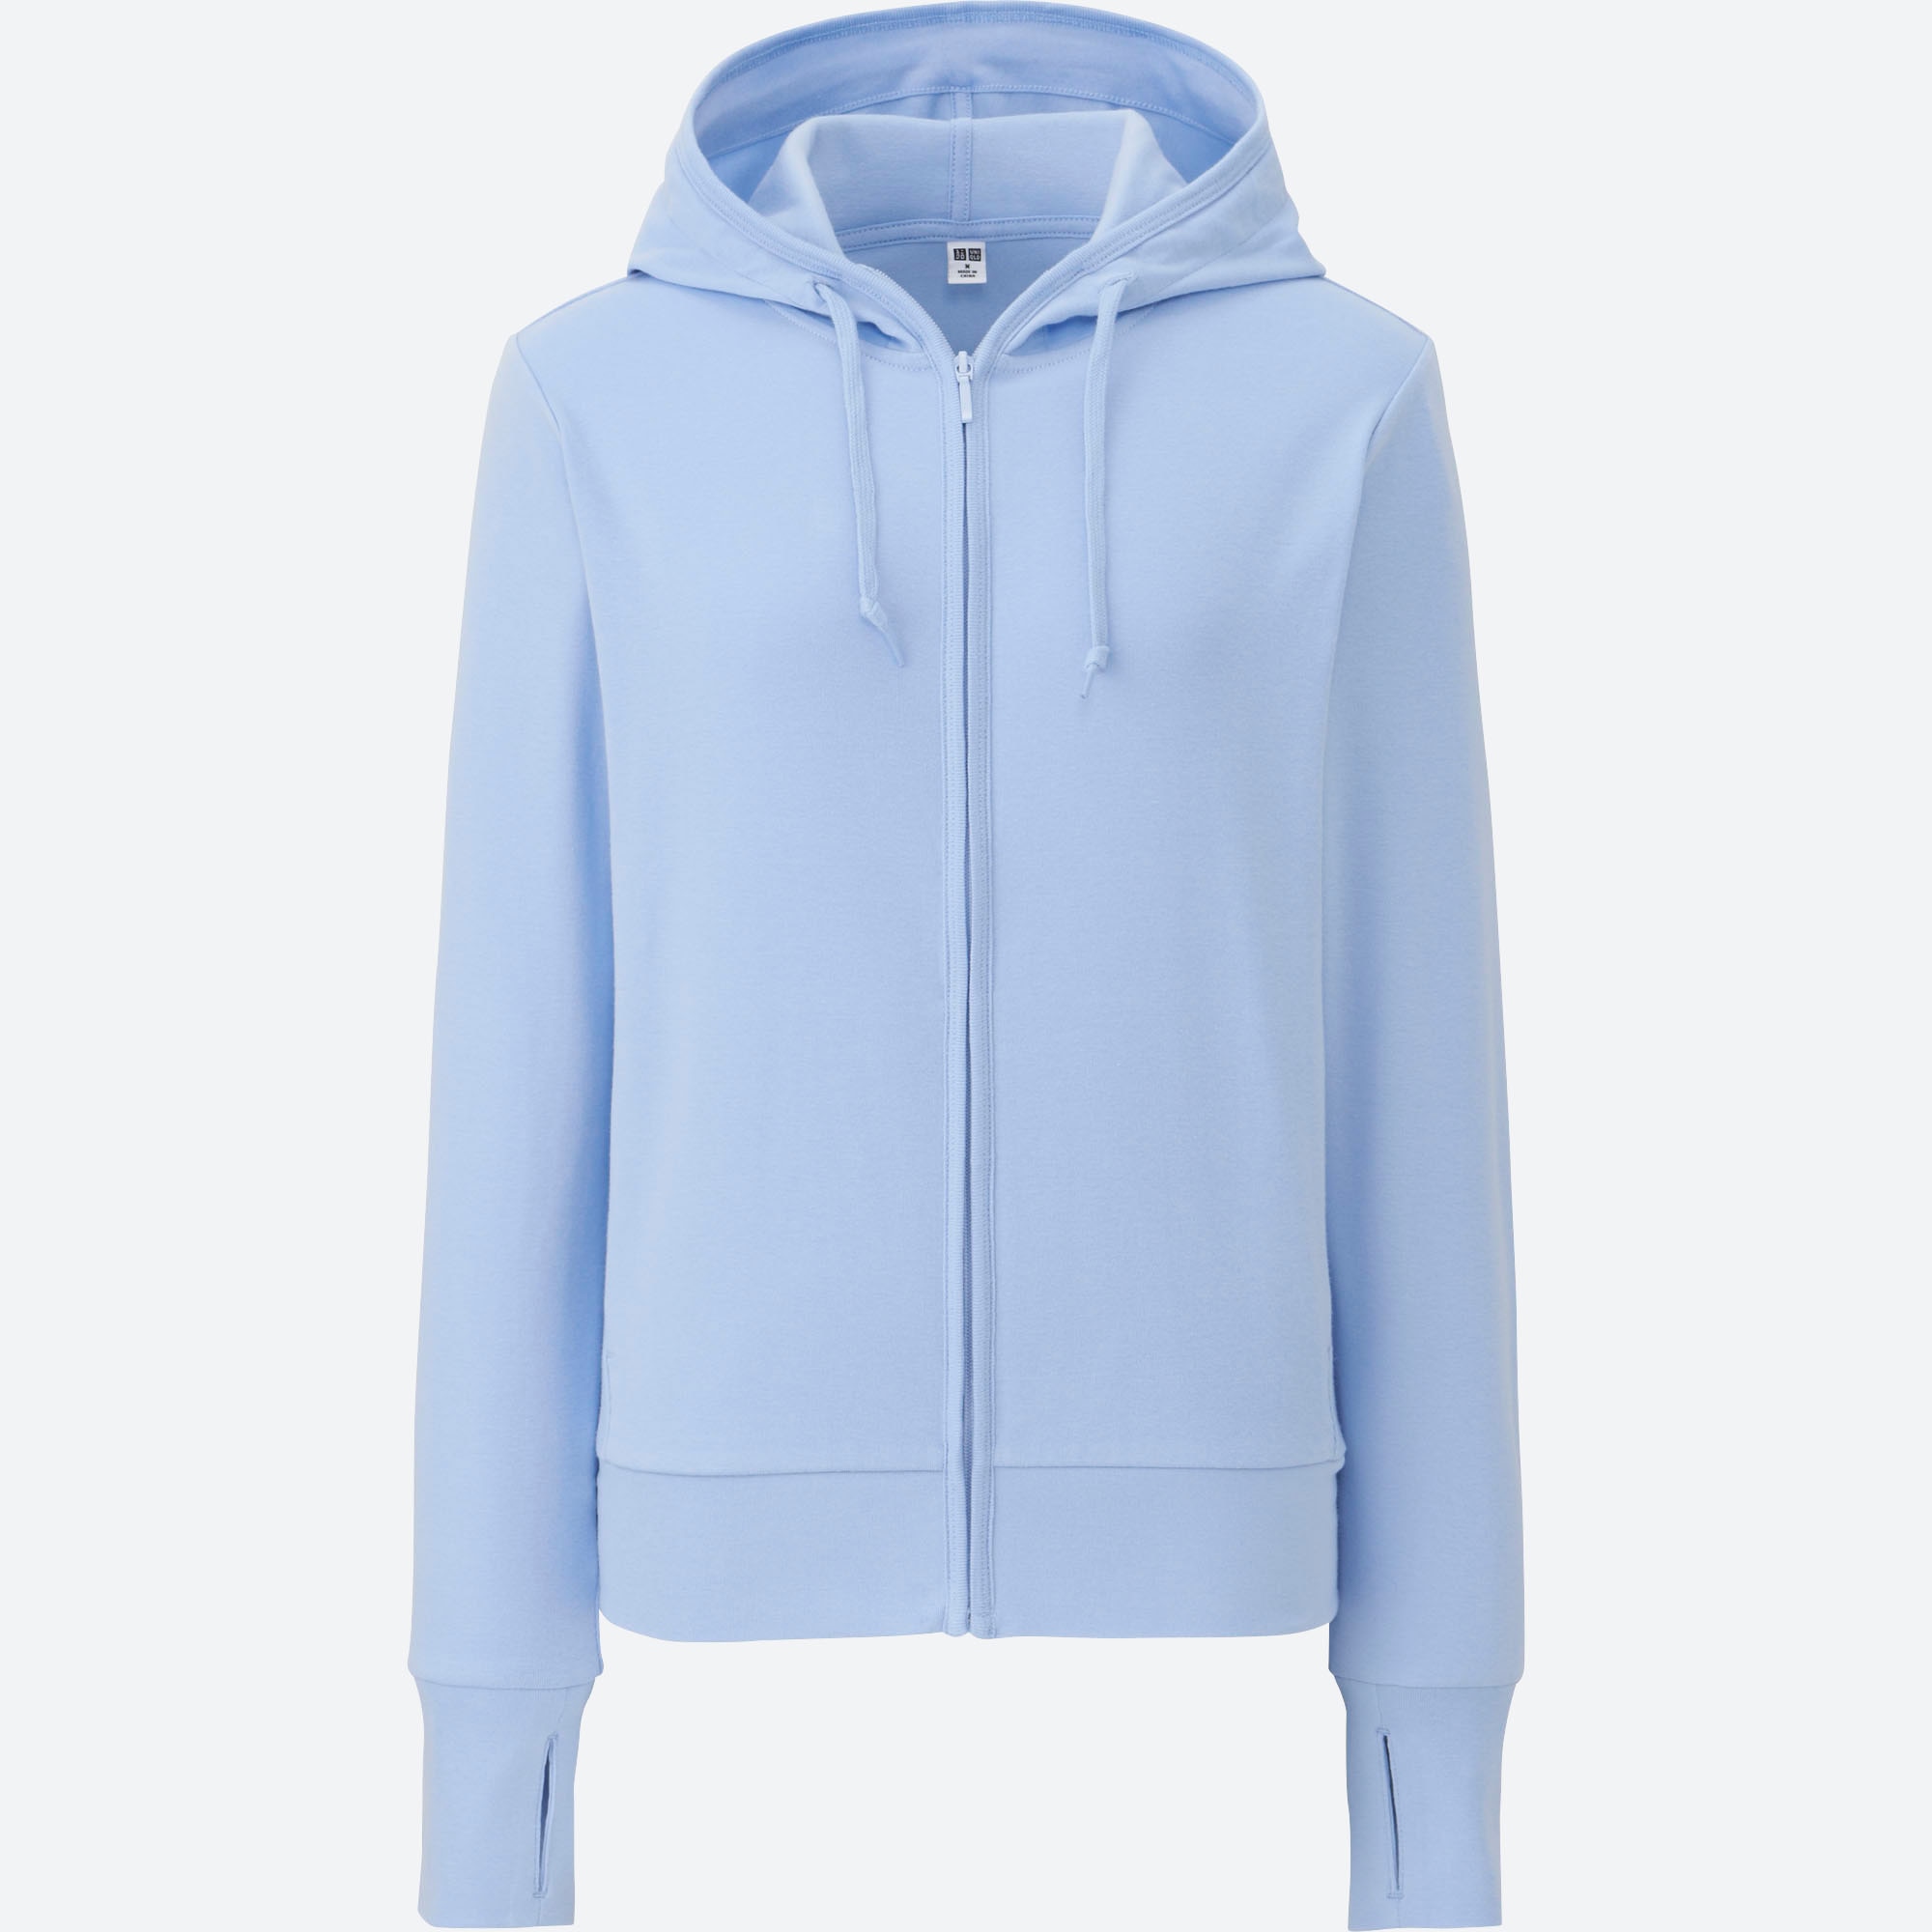 uniqlo women's zip hoodie